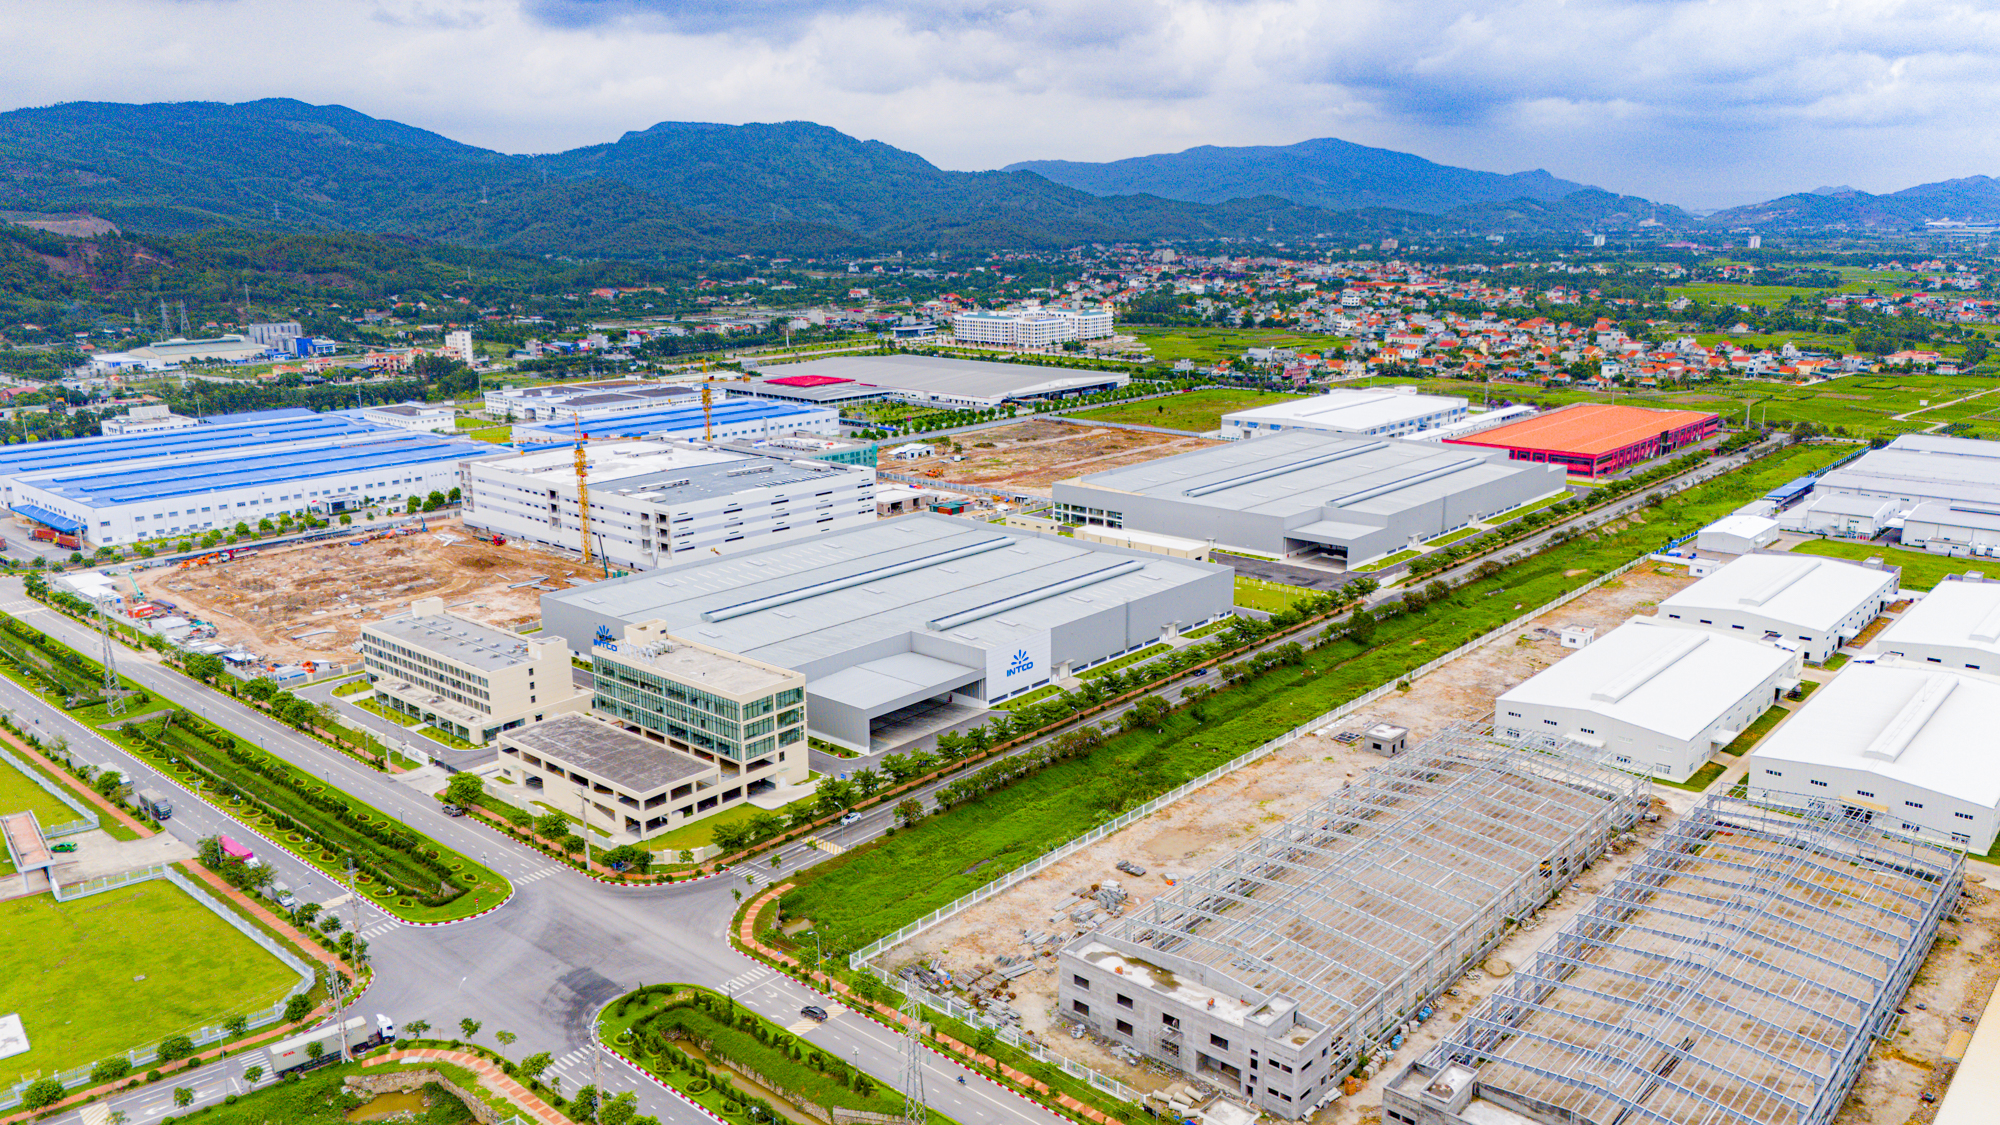 Thị xã là hạt nhân tăng trưởng mới của Quảng Ninh, được đầu tư chỉ sau Hạ Long, có khu kinh tế thu hút tỷ USD, sắp lên thành phố- Ảnh 4.